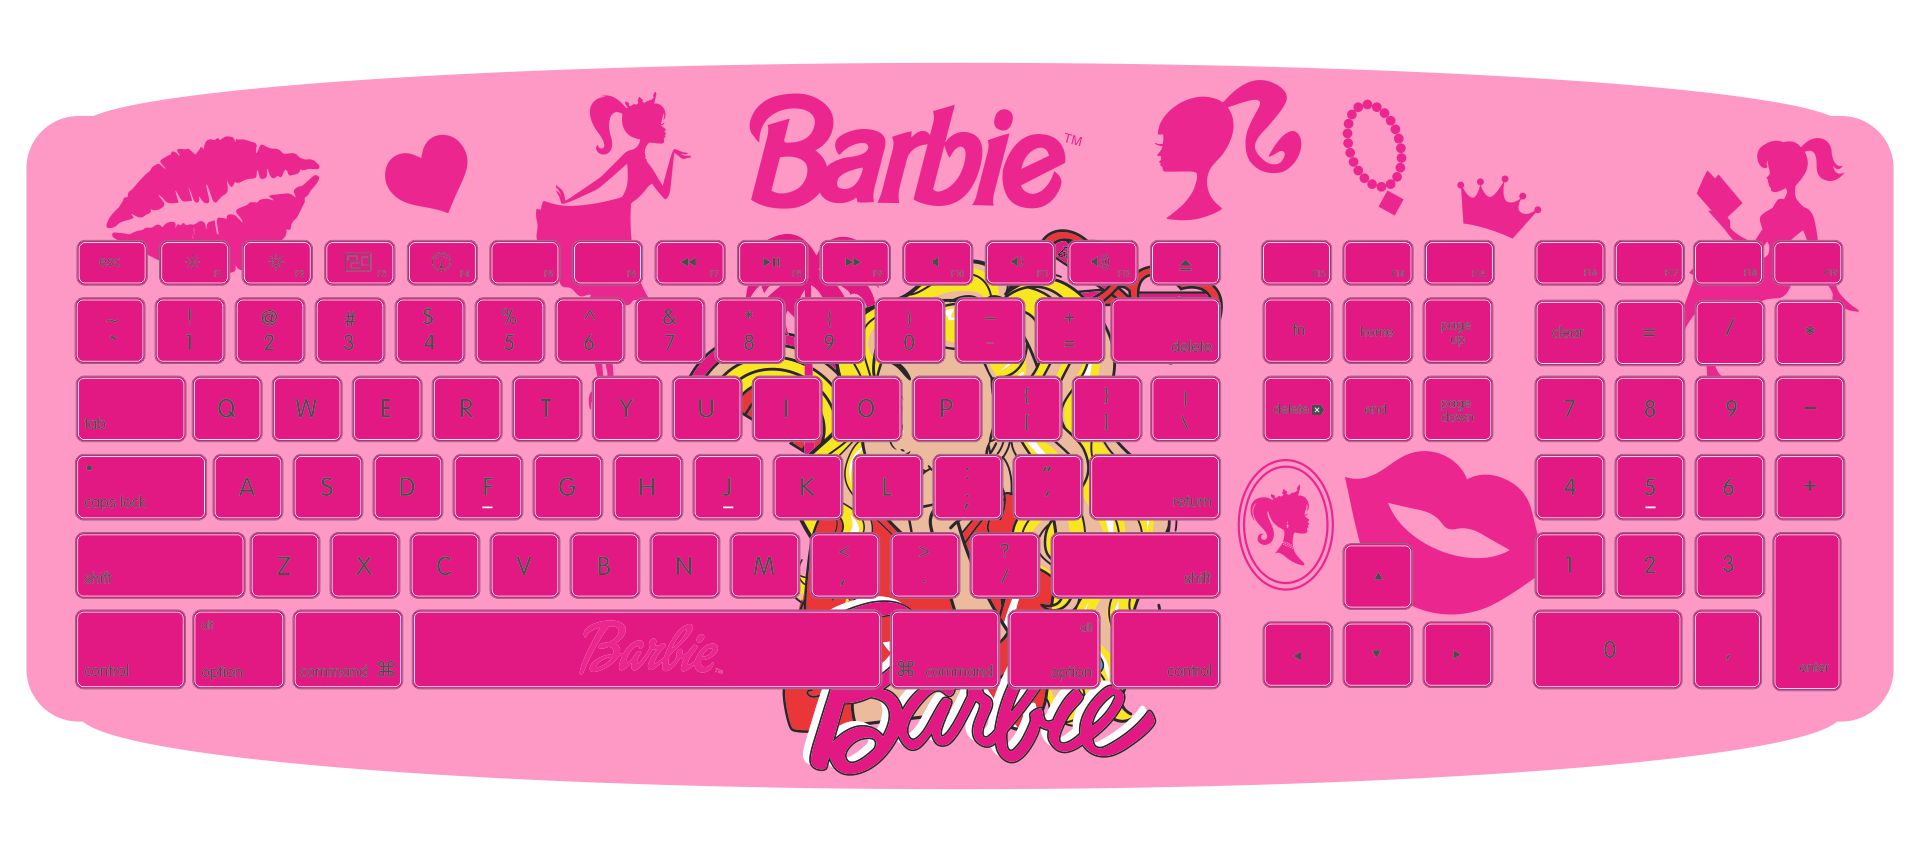 Printable Barbie Keyboard